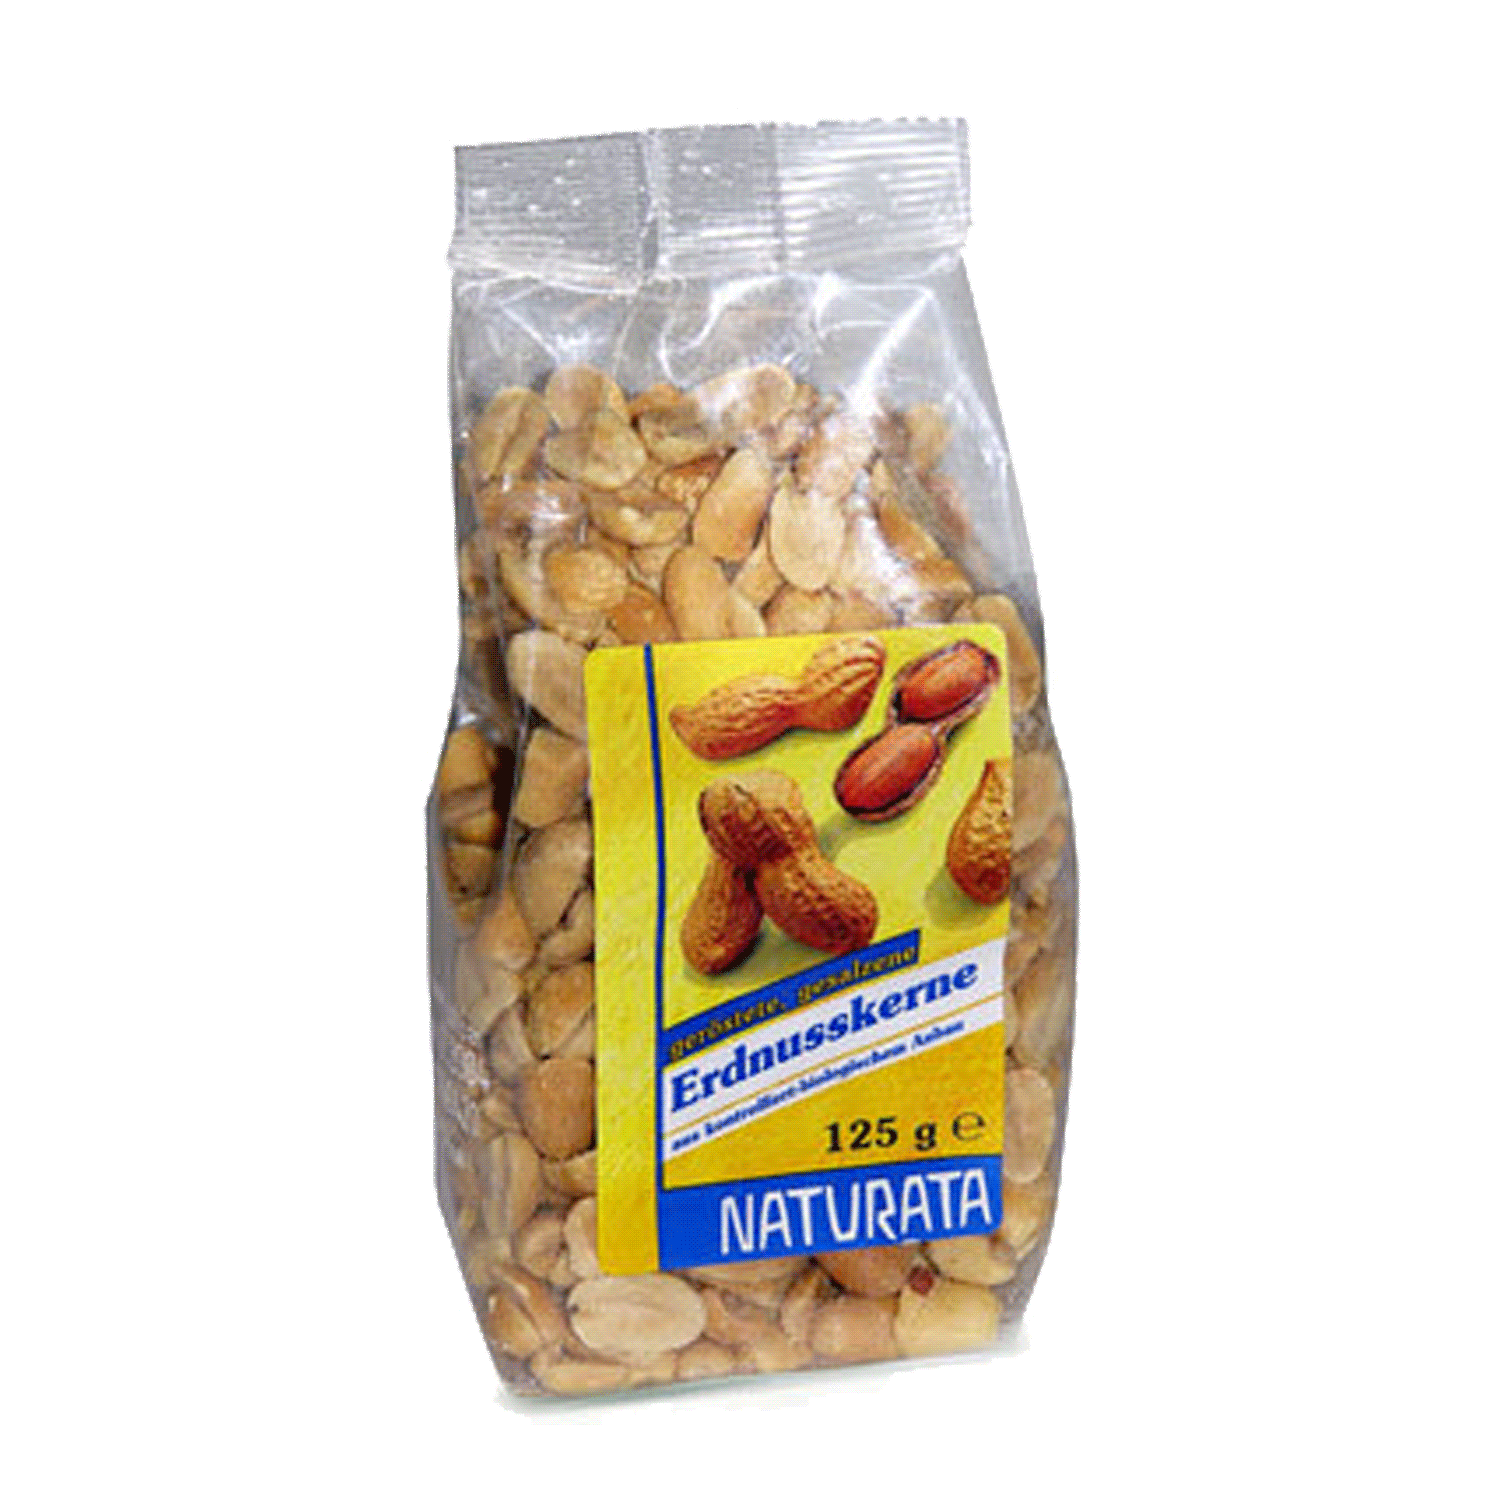 Erdnusskerne, geröstet und gesalzen, 125 g